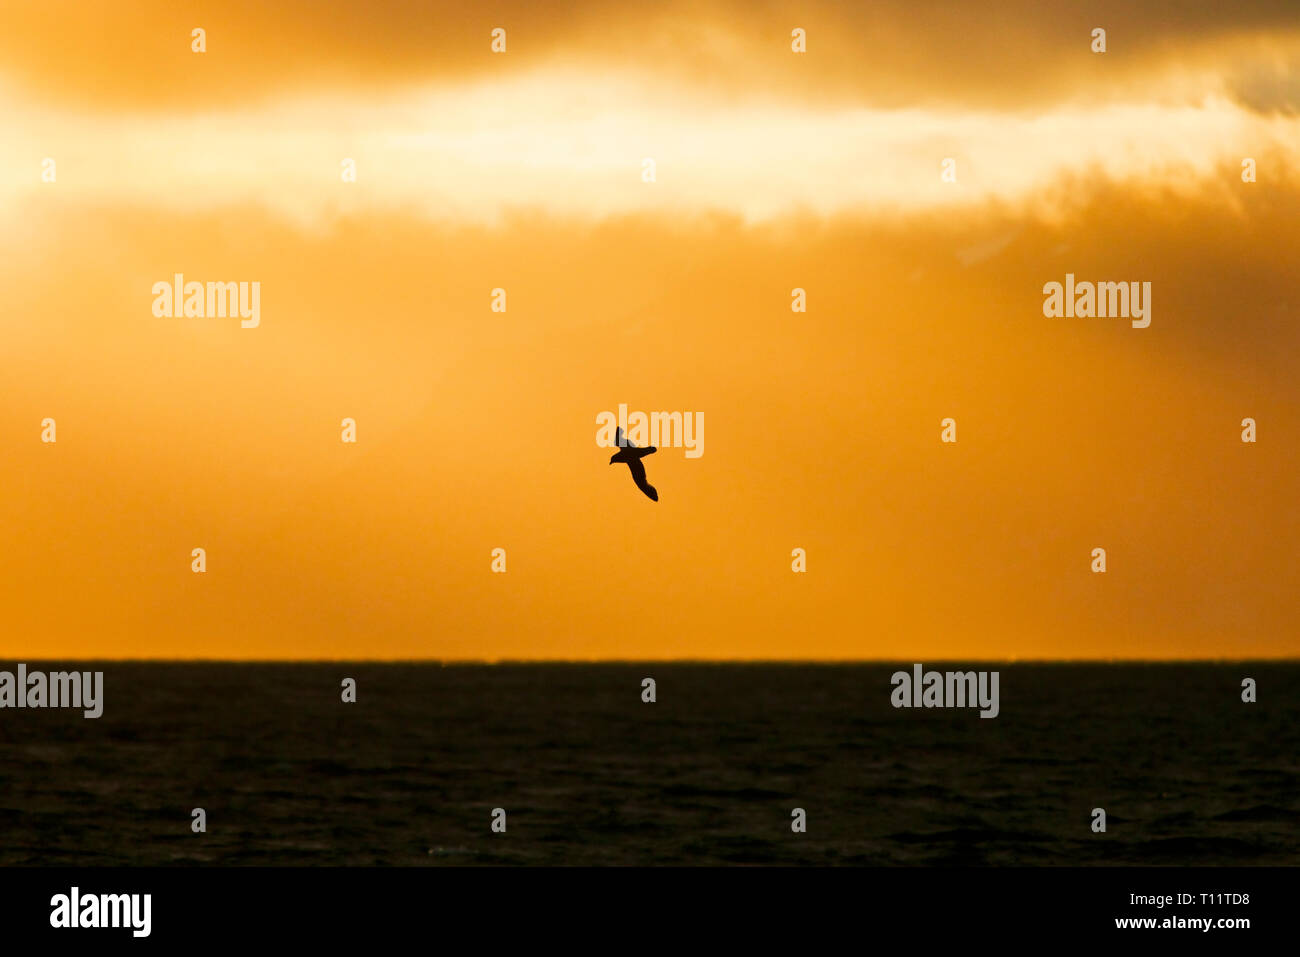 Arktis, Spitzbergen. Northern Eissturmvogel (Fulmarus glacialis) gleitet über den Sonnenuntergang. Stockfoto